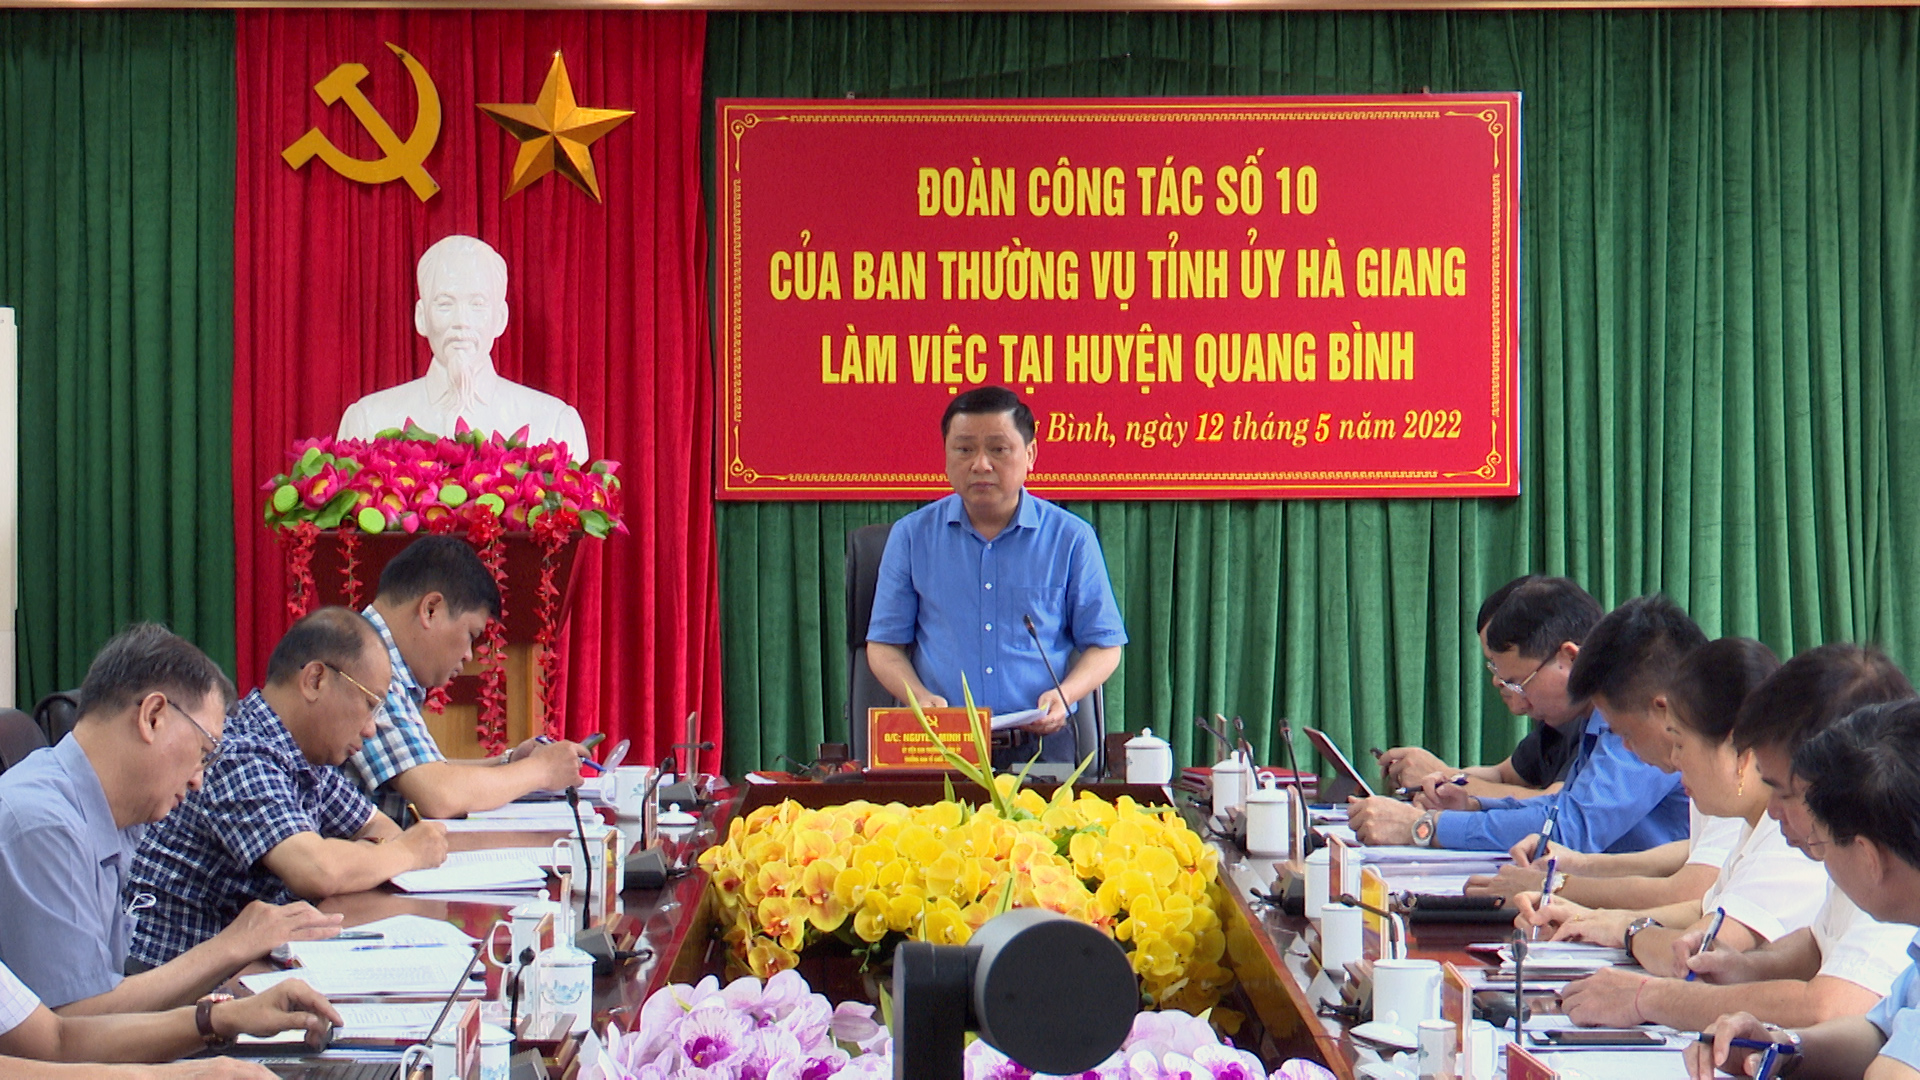 Đoàn công tác 575 (số 10) của BTV Tỉnh ủy Hà Giang làm việc tại Quang Bình